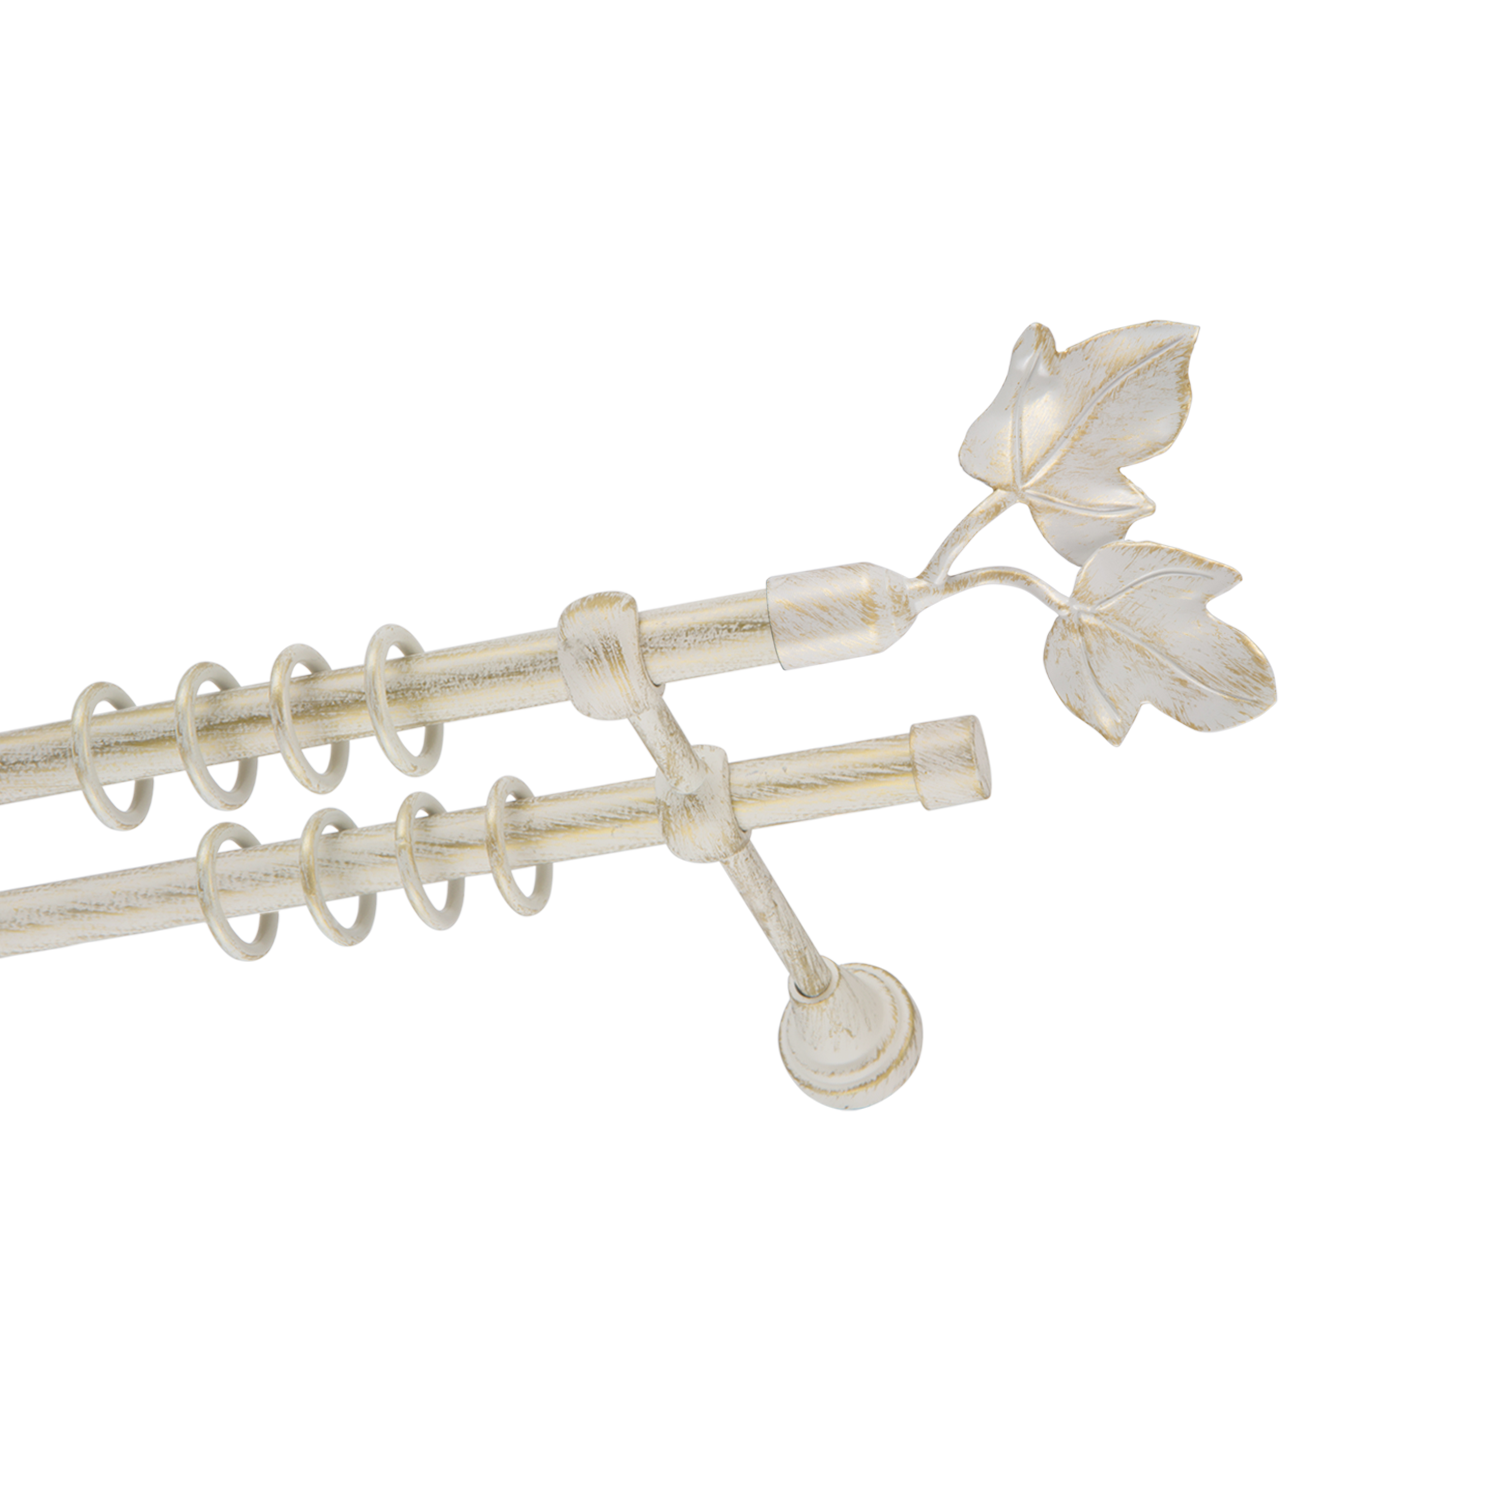 Металлический карниз для штор Листья, двухрядный 16/16 мм, белый, гладкая штанга, длина 240 см - фото Wikidecor.ru